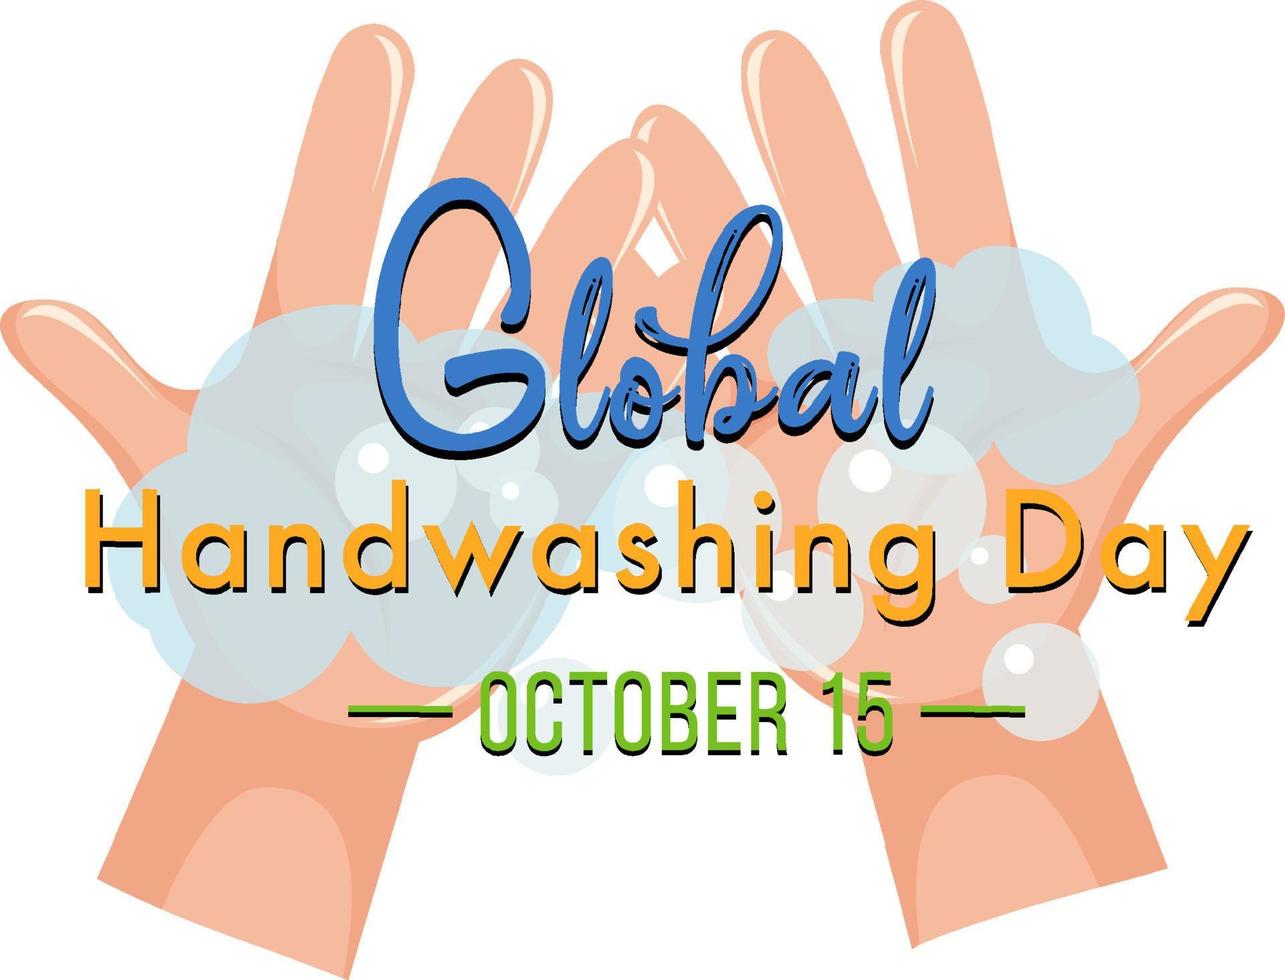 design global de banner do dia da lavagem das mãos vetor